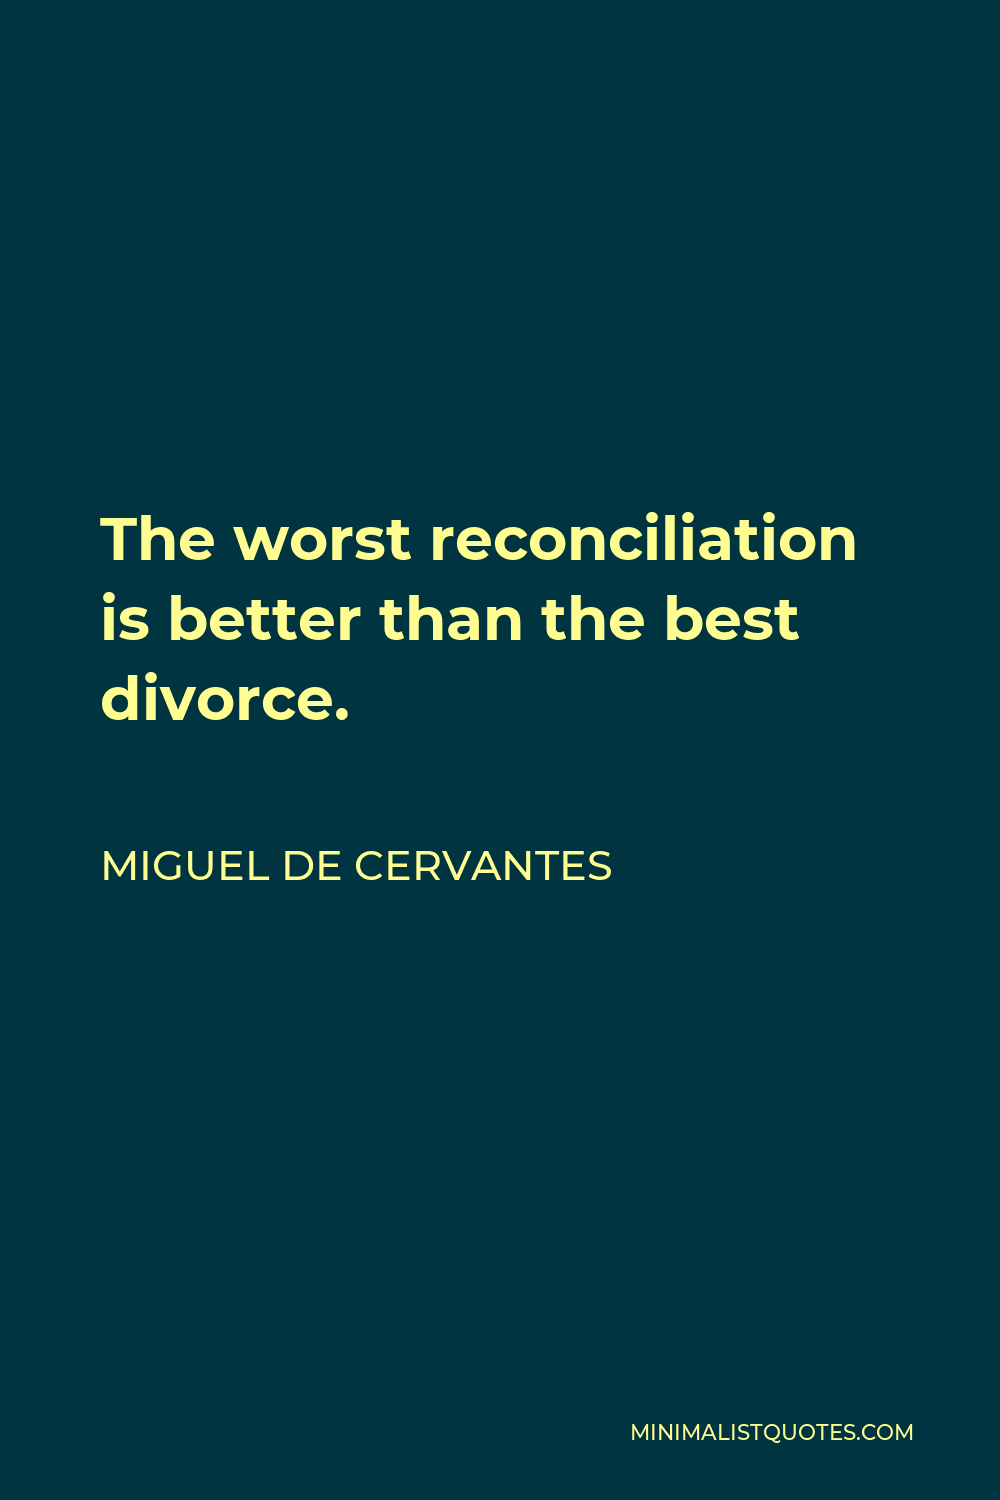 Miguel de Cervantes Quote - The worst reconciliation is better than the best divorce.